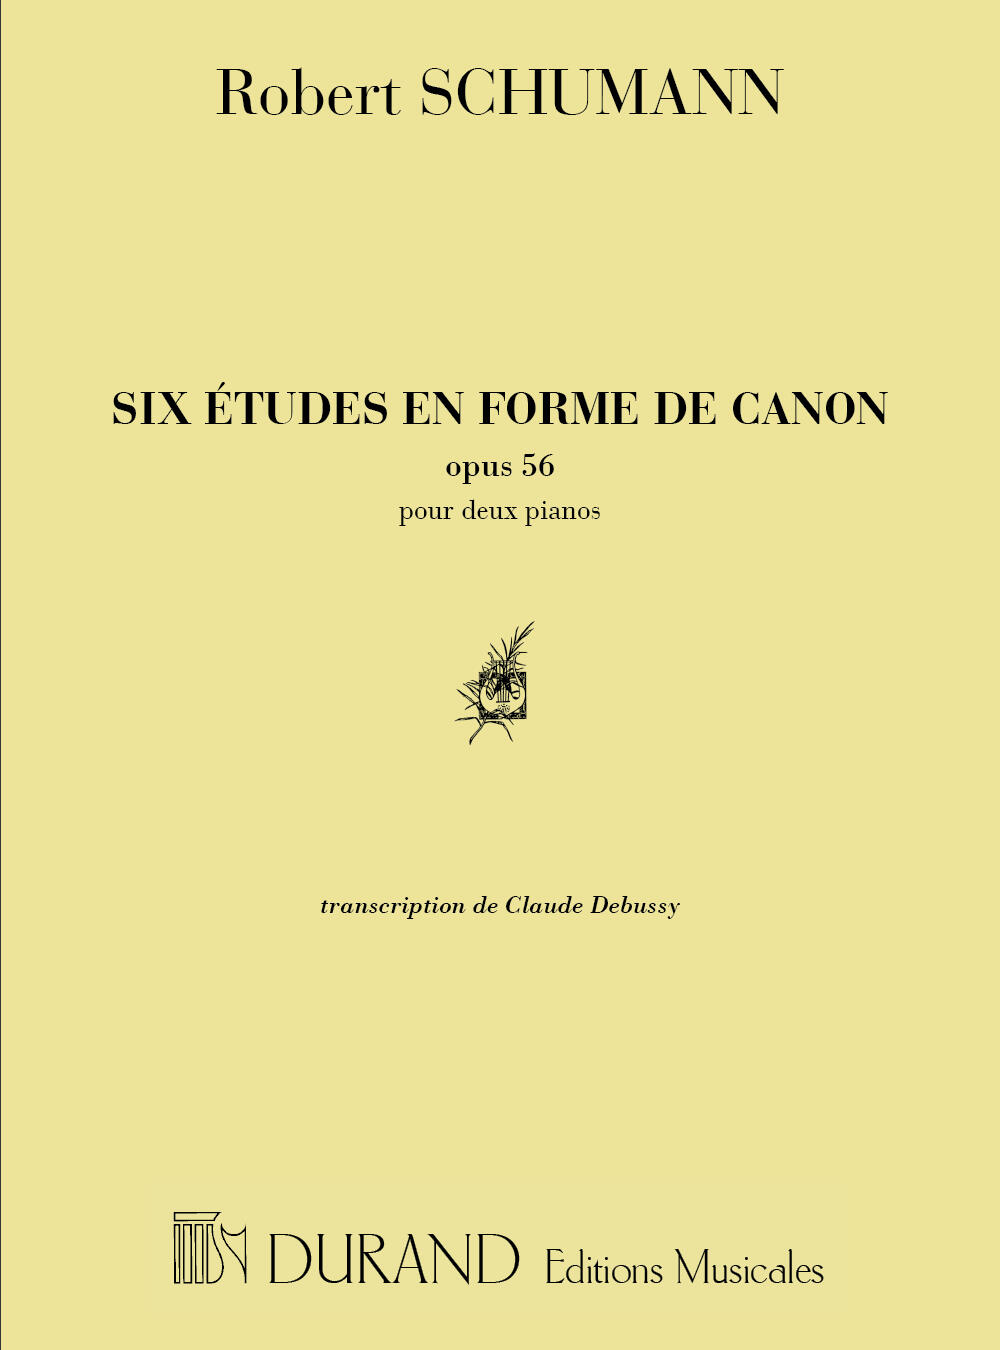 Six études en Forme de Canon Opus 56 Transcription de C.A. Debussy Robert Schumann 2 Pianos (4 hands) : photo 1